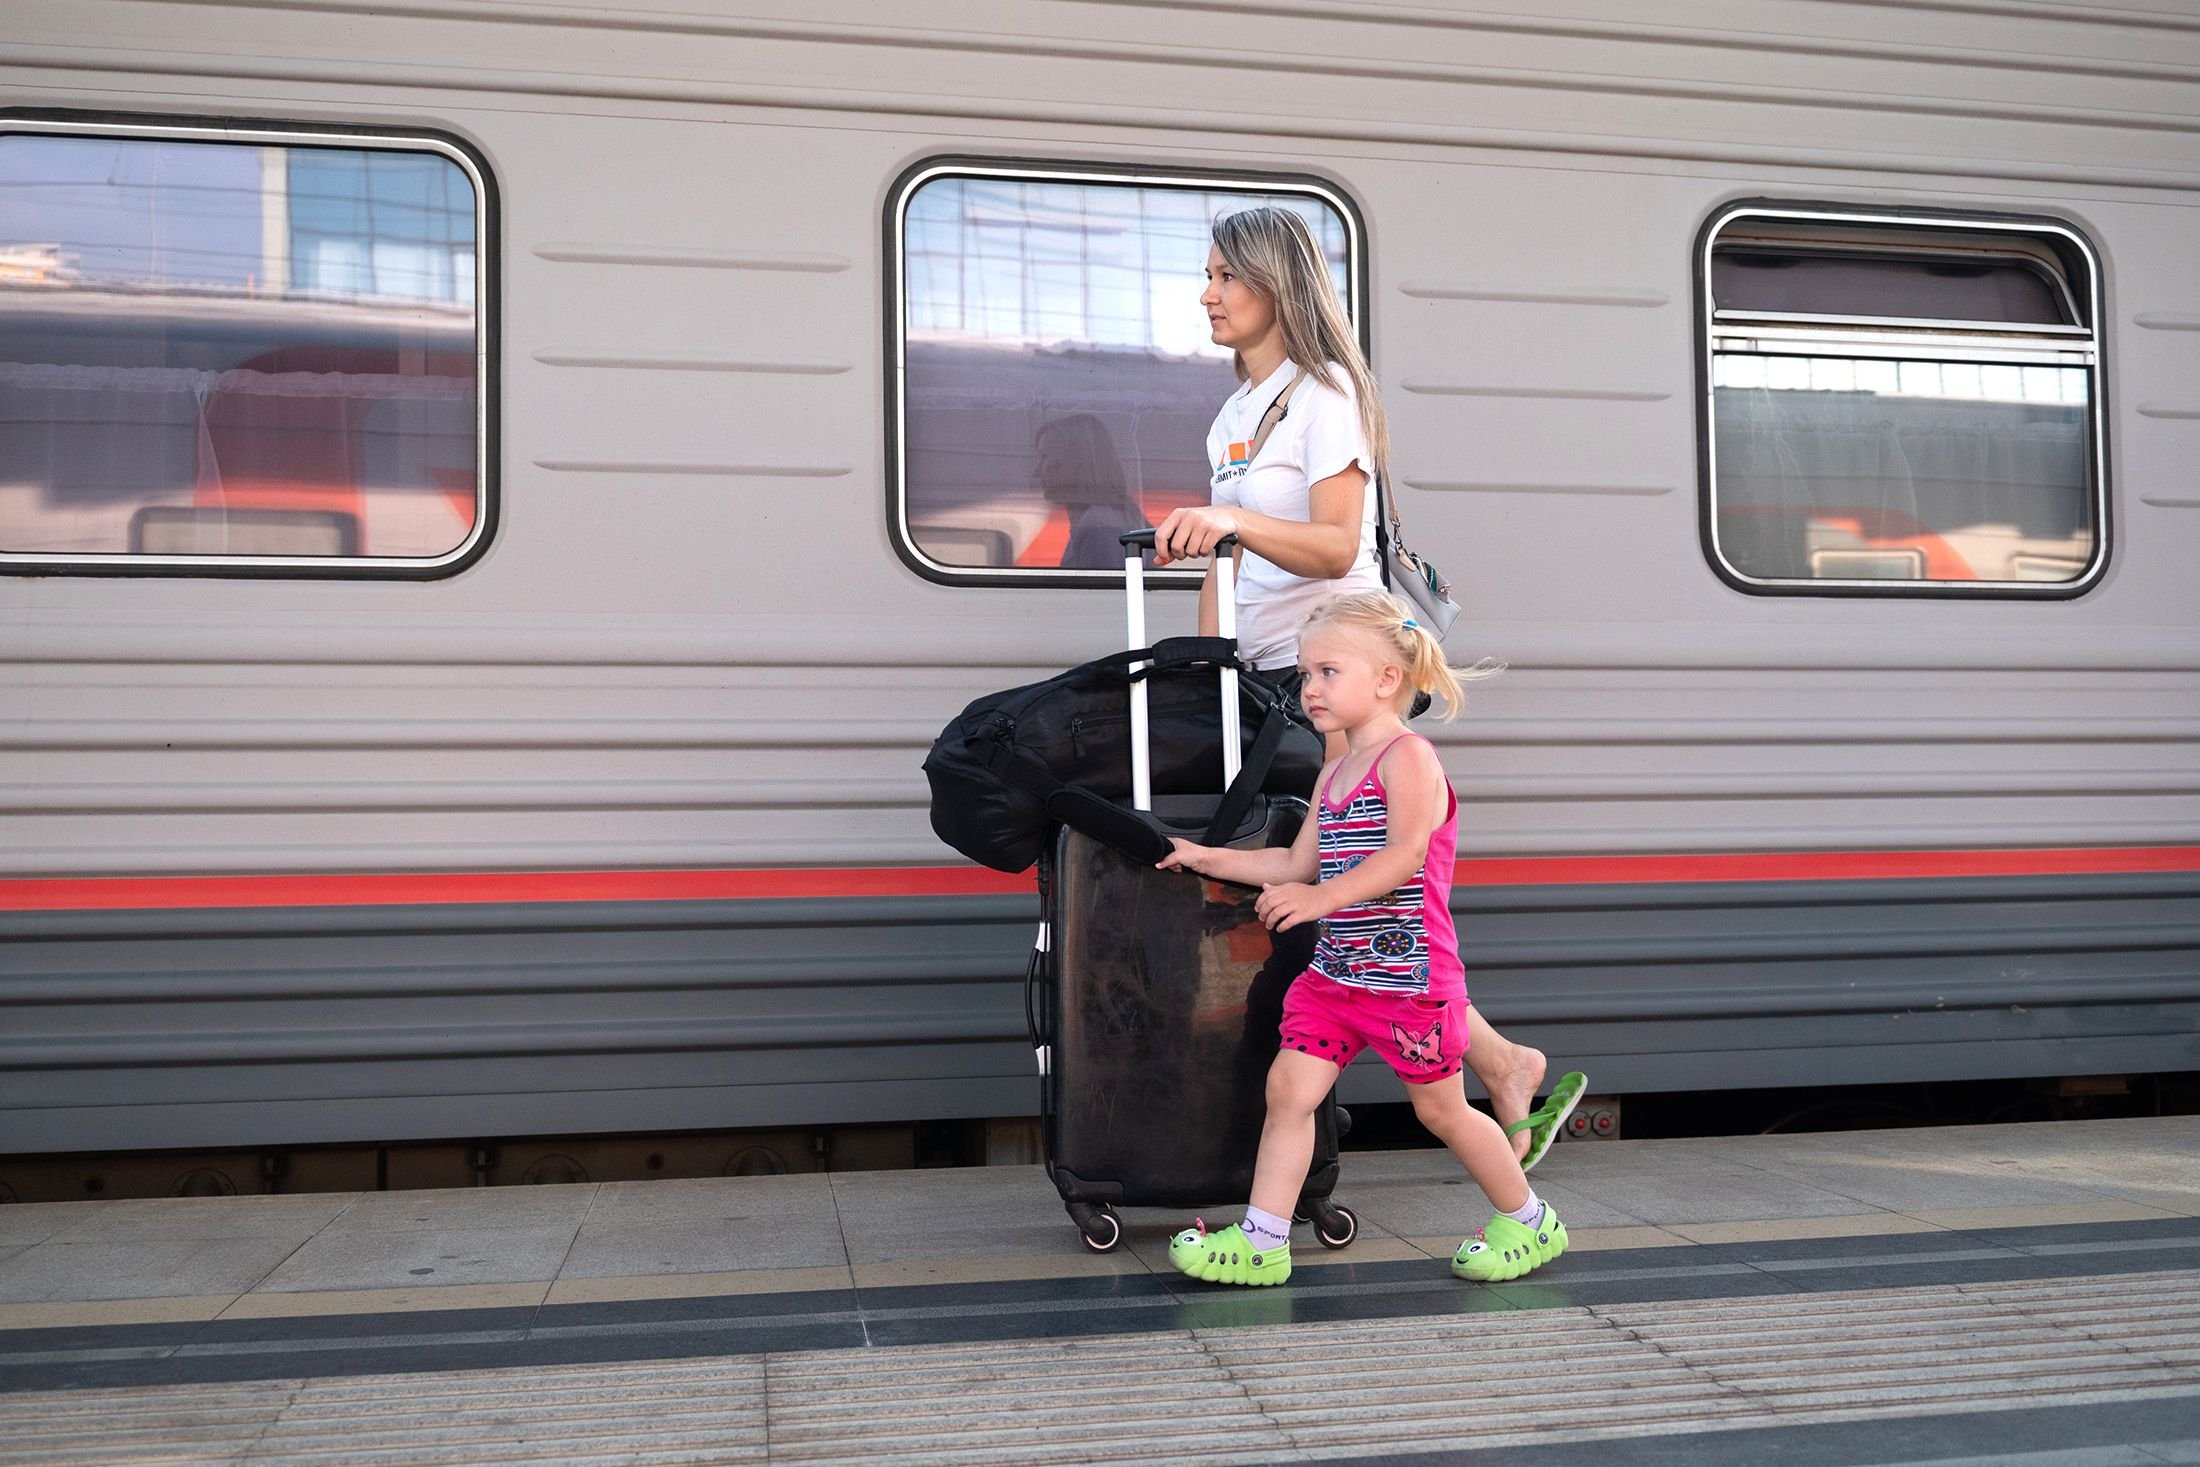 Ржд дети до 17 лет. Поездка на поезде с детьми. Путешествие с детьми на поезде. Дети в поезде дальнего следования. Поездка на поезде летом.